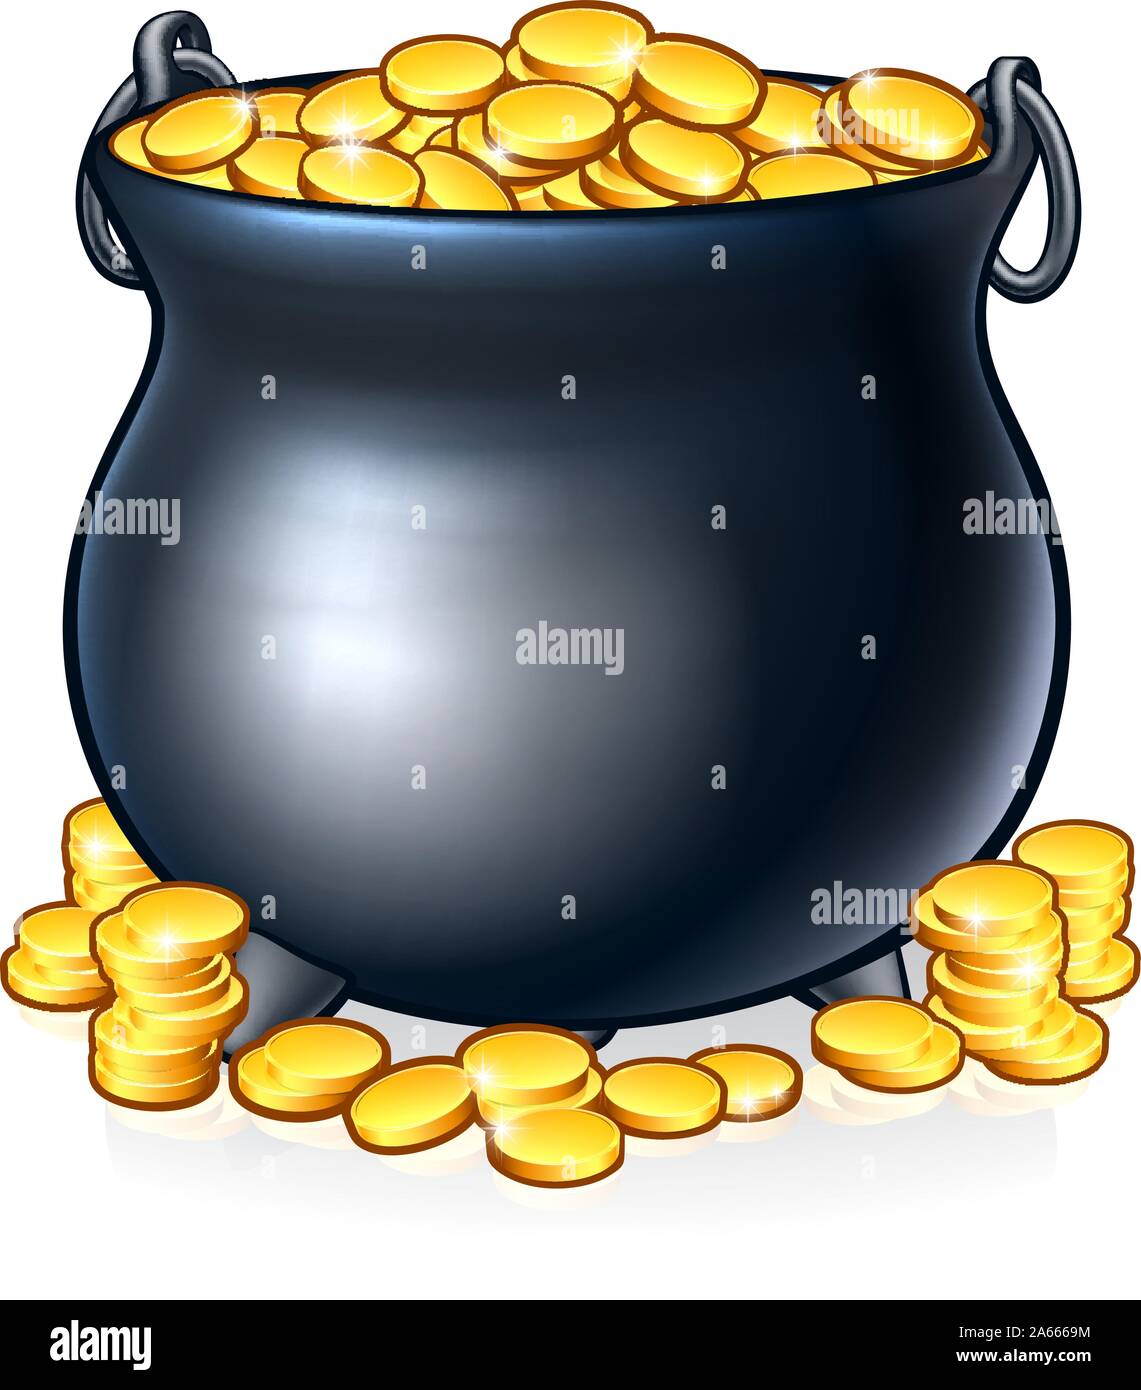 Caldero de monedas de oro al final del arco iris Ilustración del Vector